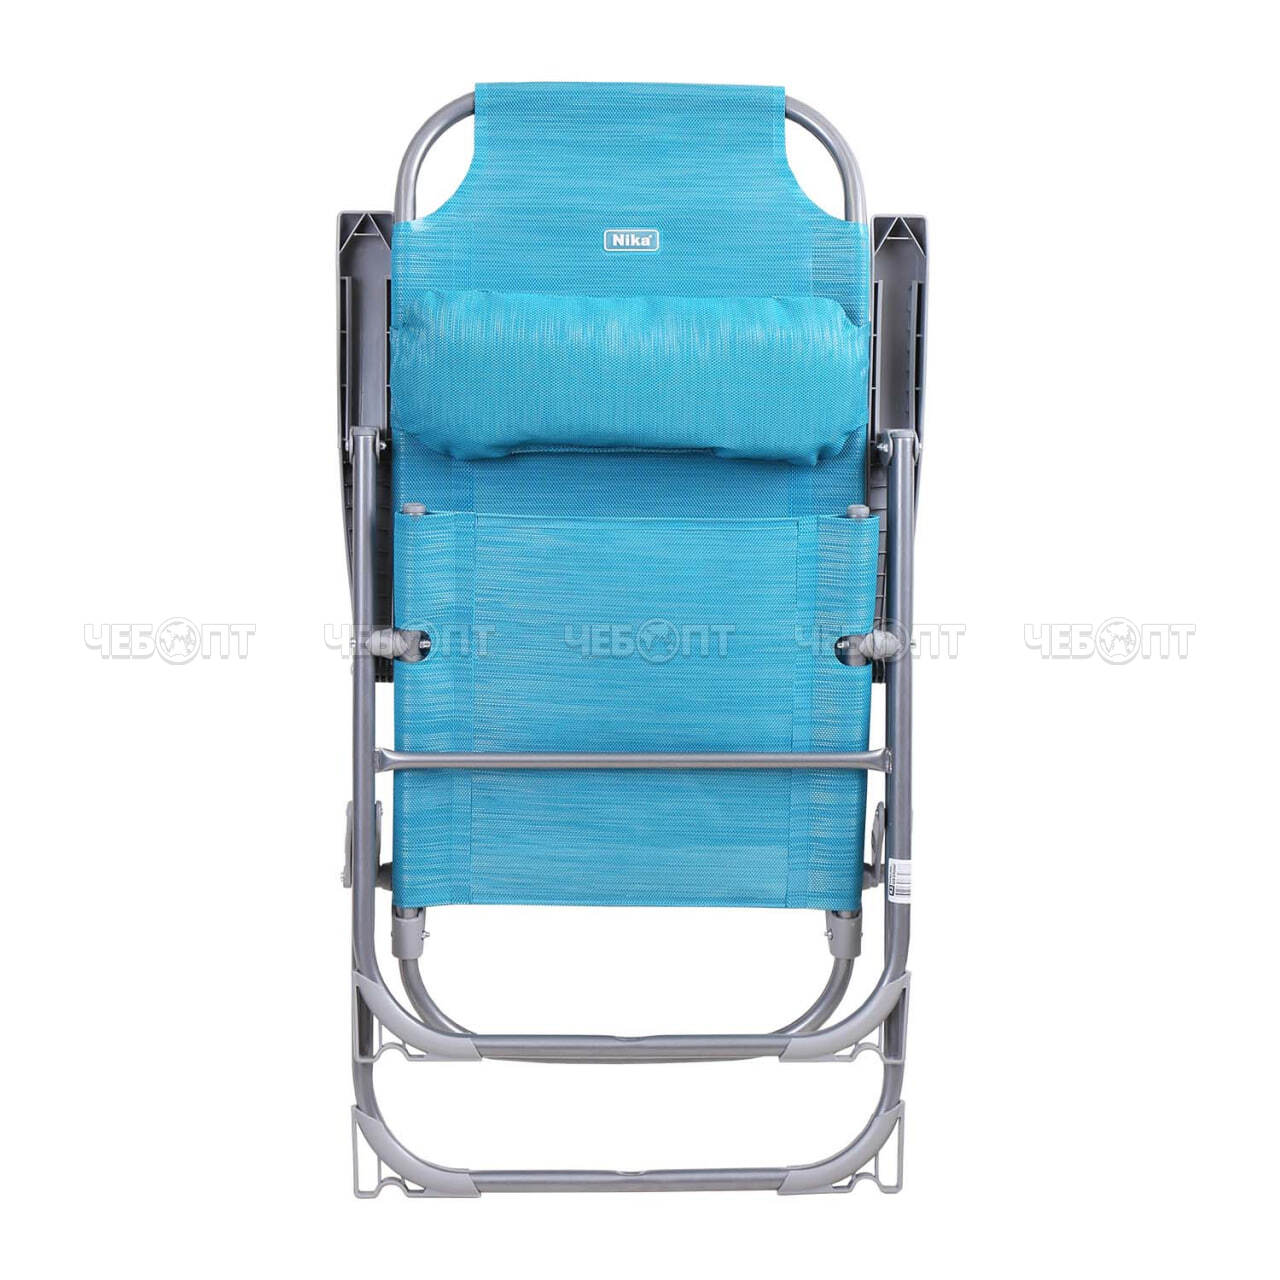 Кресло - шезлонг БИРЮЗОВЫЙ  складное, 8 положений спинки, съемный подгол, размер сиденья 750*590*1090 мм, макс. нагрузка 120 кг арт. К2/Б NIKA [1]. ЧЕБОПТ.